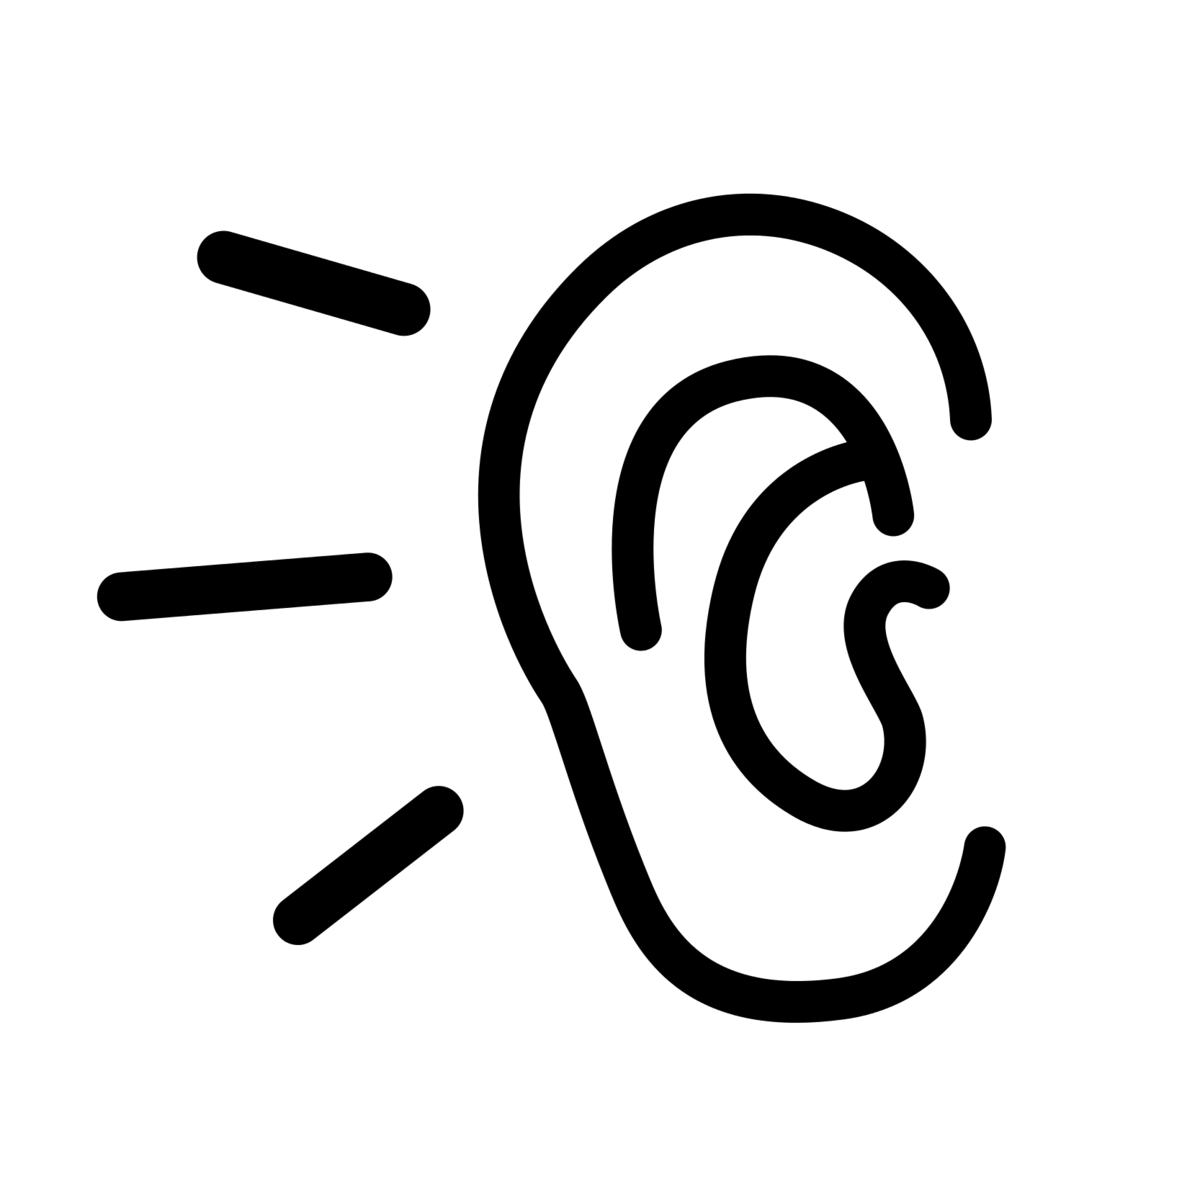 Listening ear icon